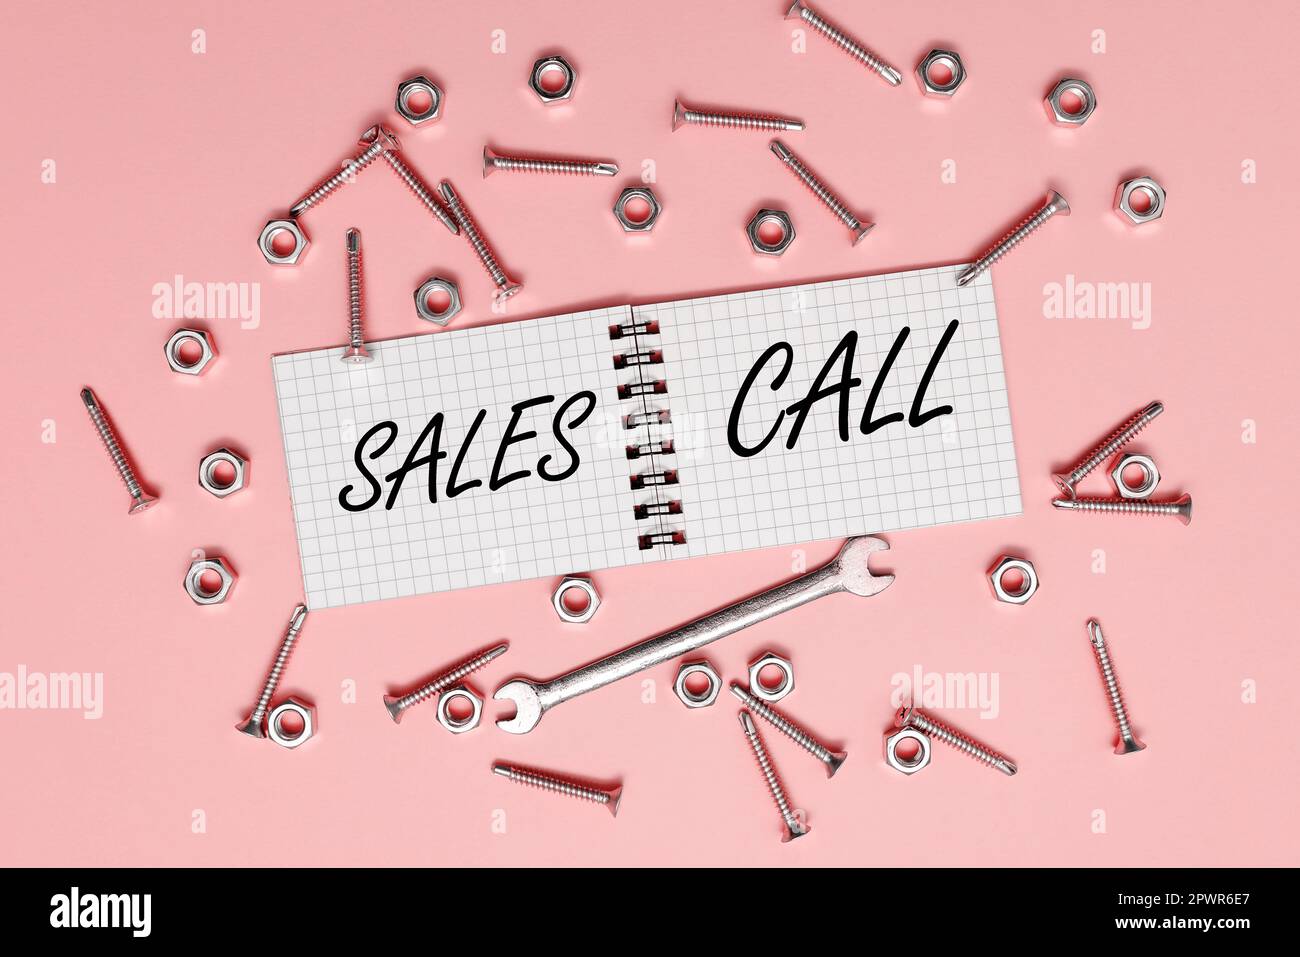 Segno che mostra la chiamata di vendite, idea di affari una chiamata di telefono fatta da un rappresentante di vendite di un'azienda Foto Stock